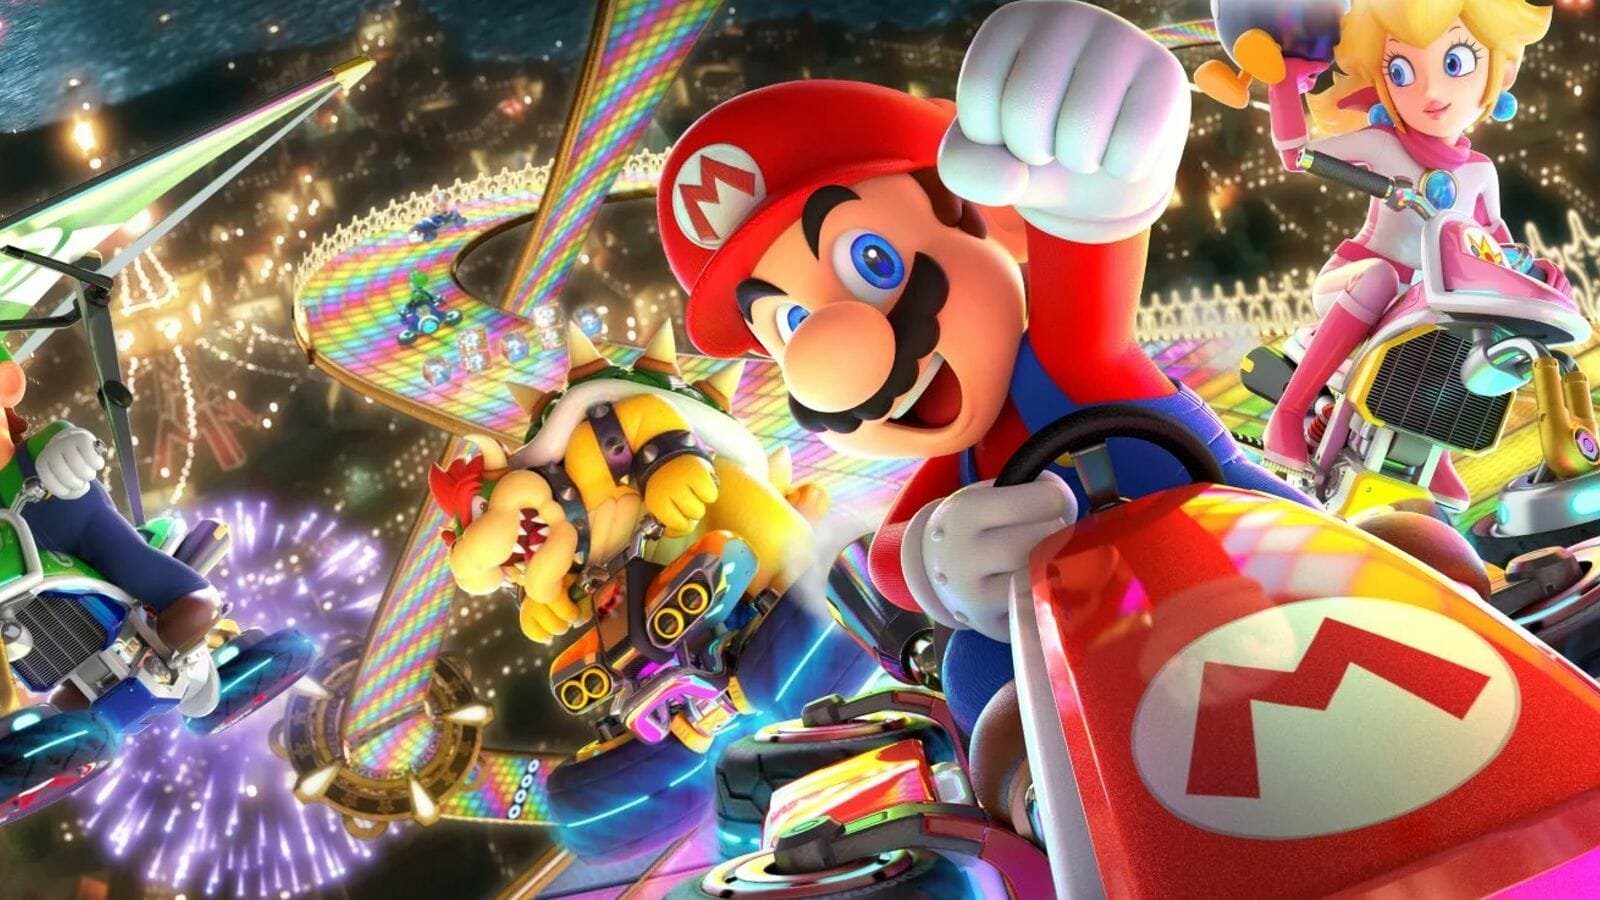 Best switch games: Mario kart